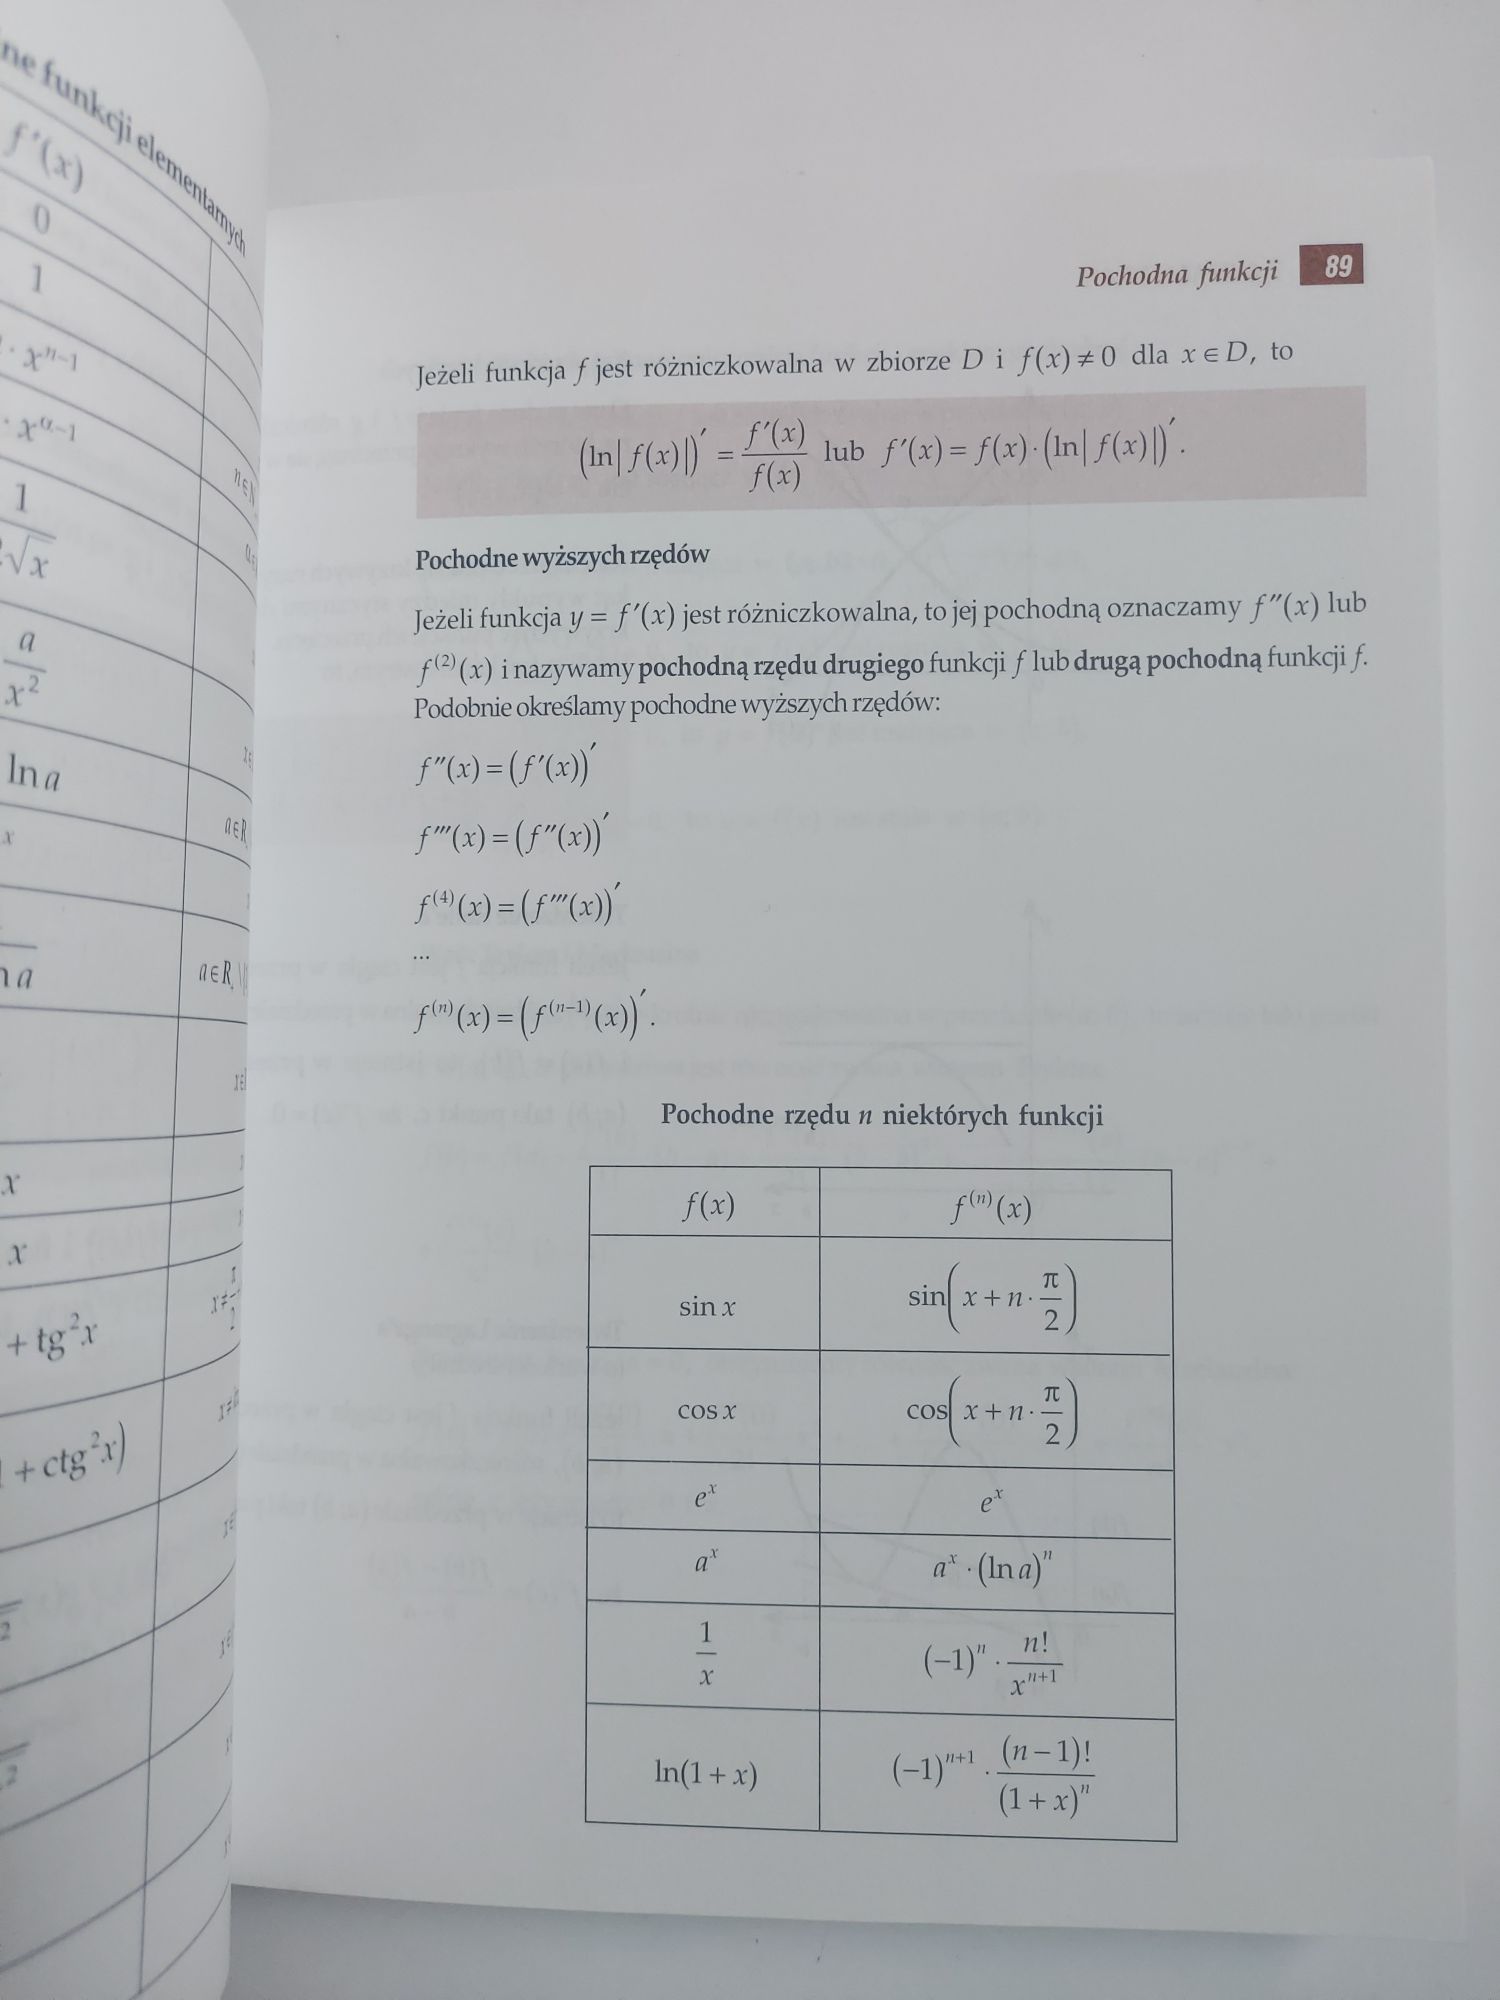 Książka Tablice matematyczne fizyczne chemiczne astronomiczne.